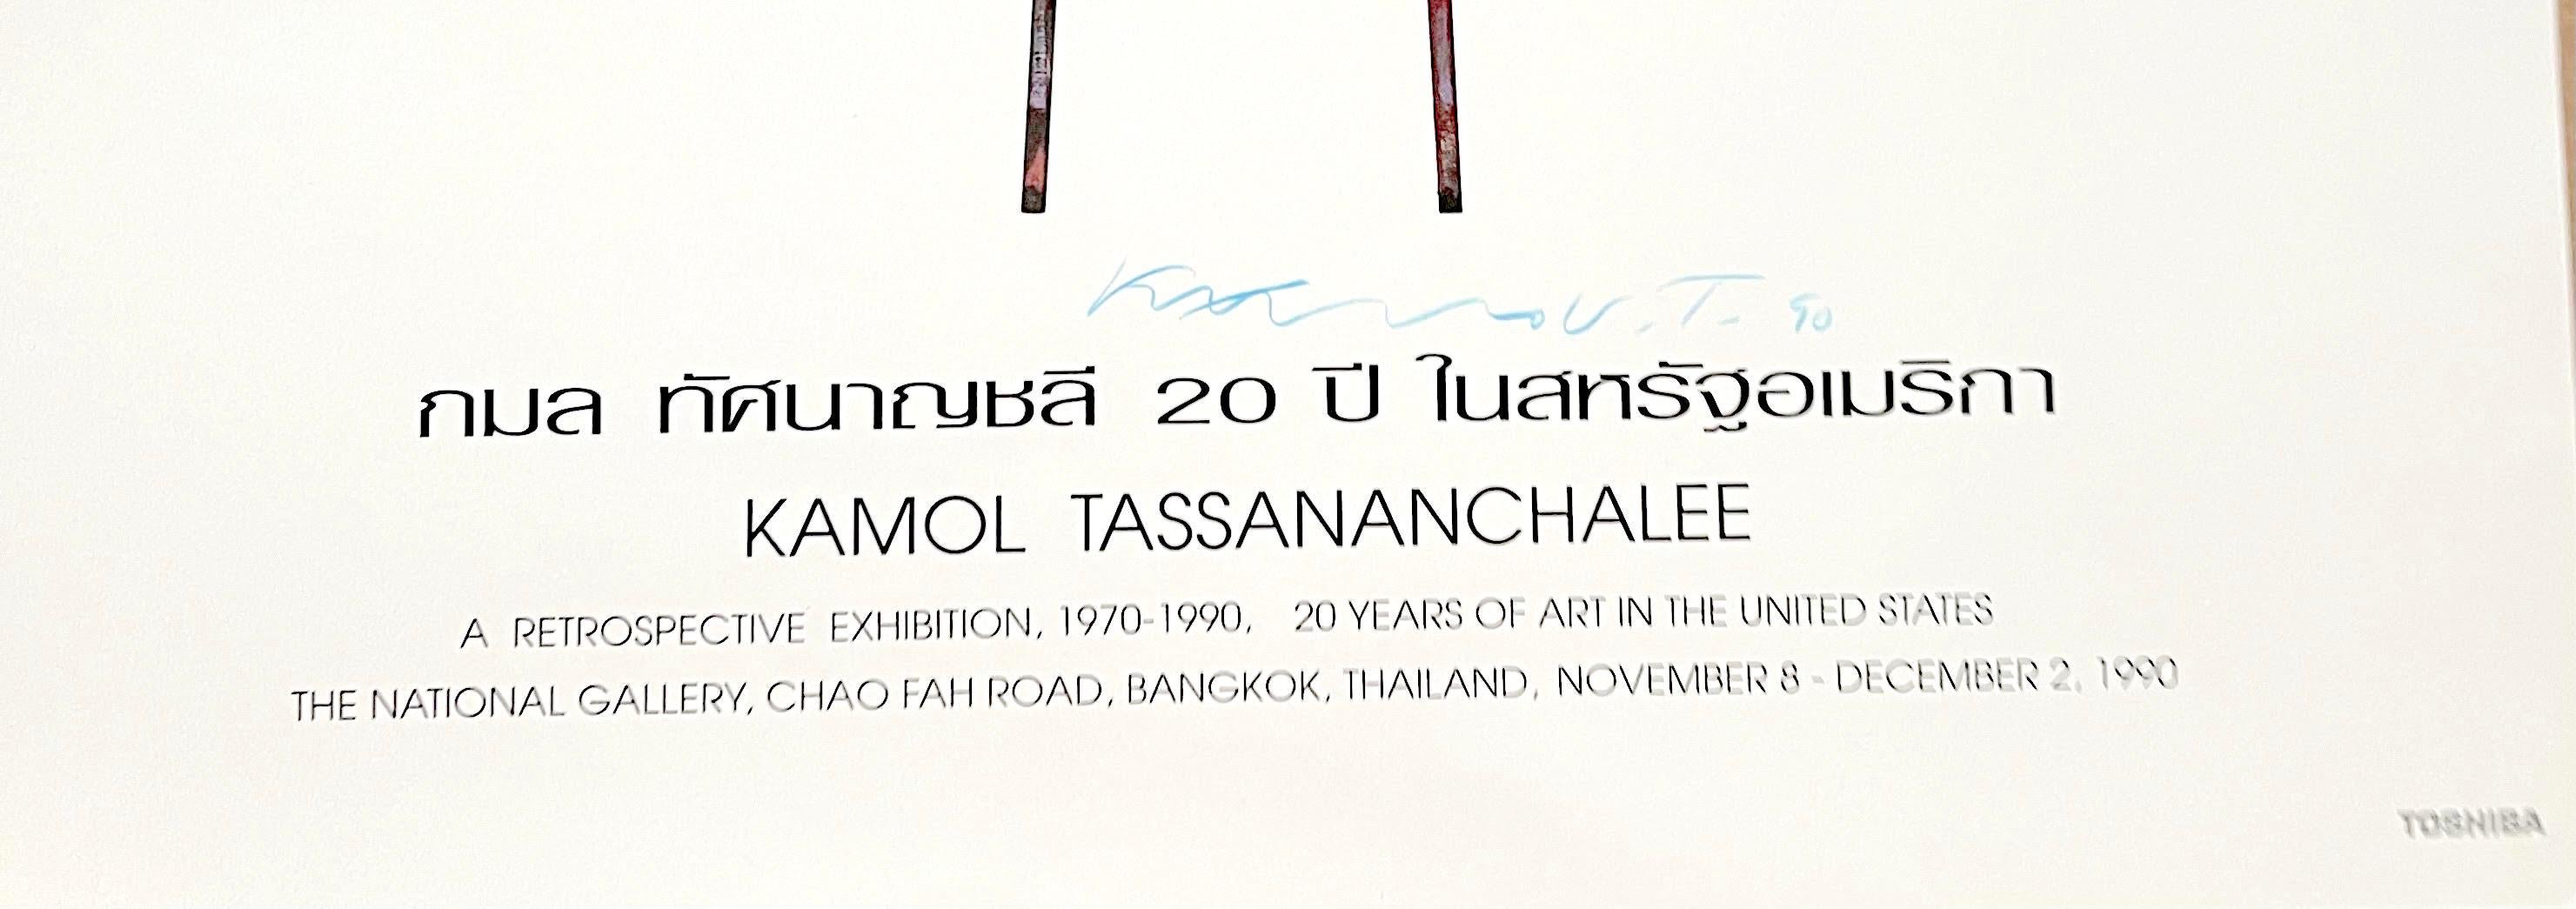 Kamol Tassananchalee
Plakat für eine Retrospektive in der Nationalgalerie, Thailand (handsigniert), 1990
Offsetlithografie-Poster 
Handsigniert und datiert von Kamol Tassananchalee in blauer Kreide auf der Vorderseite
28 × 23 Zoll
Ungerahmt
Das